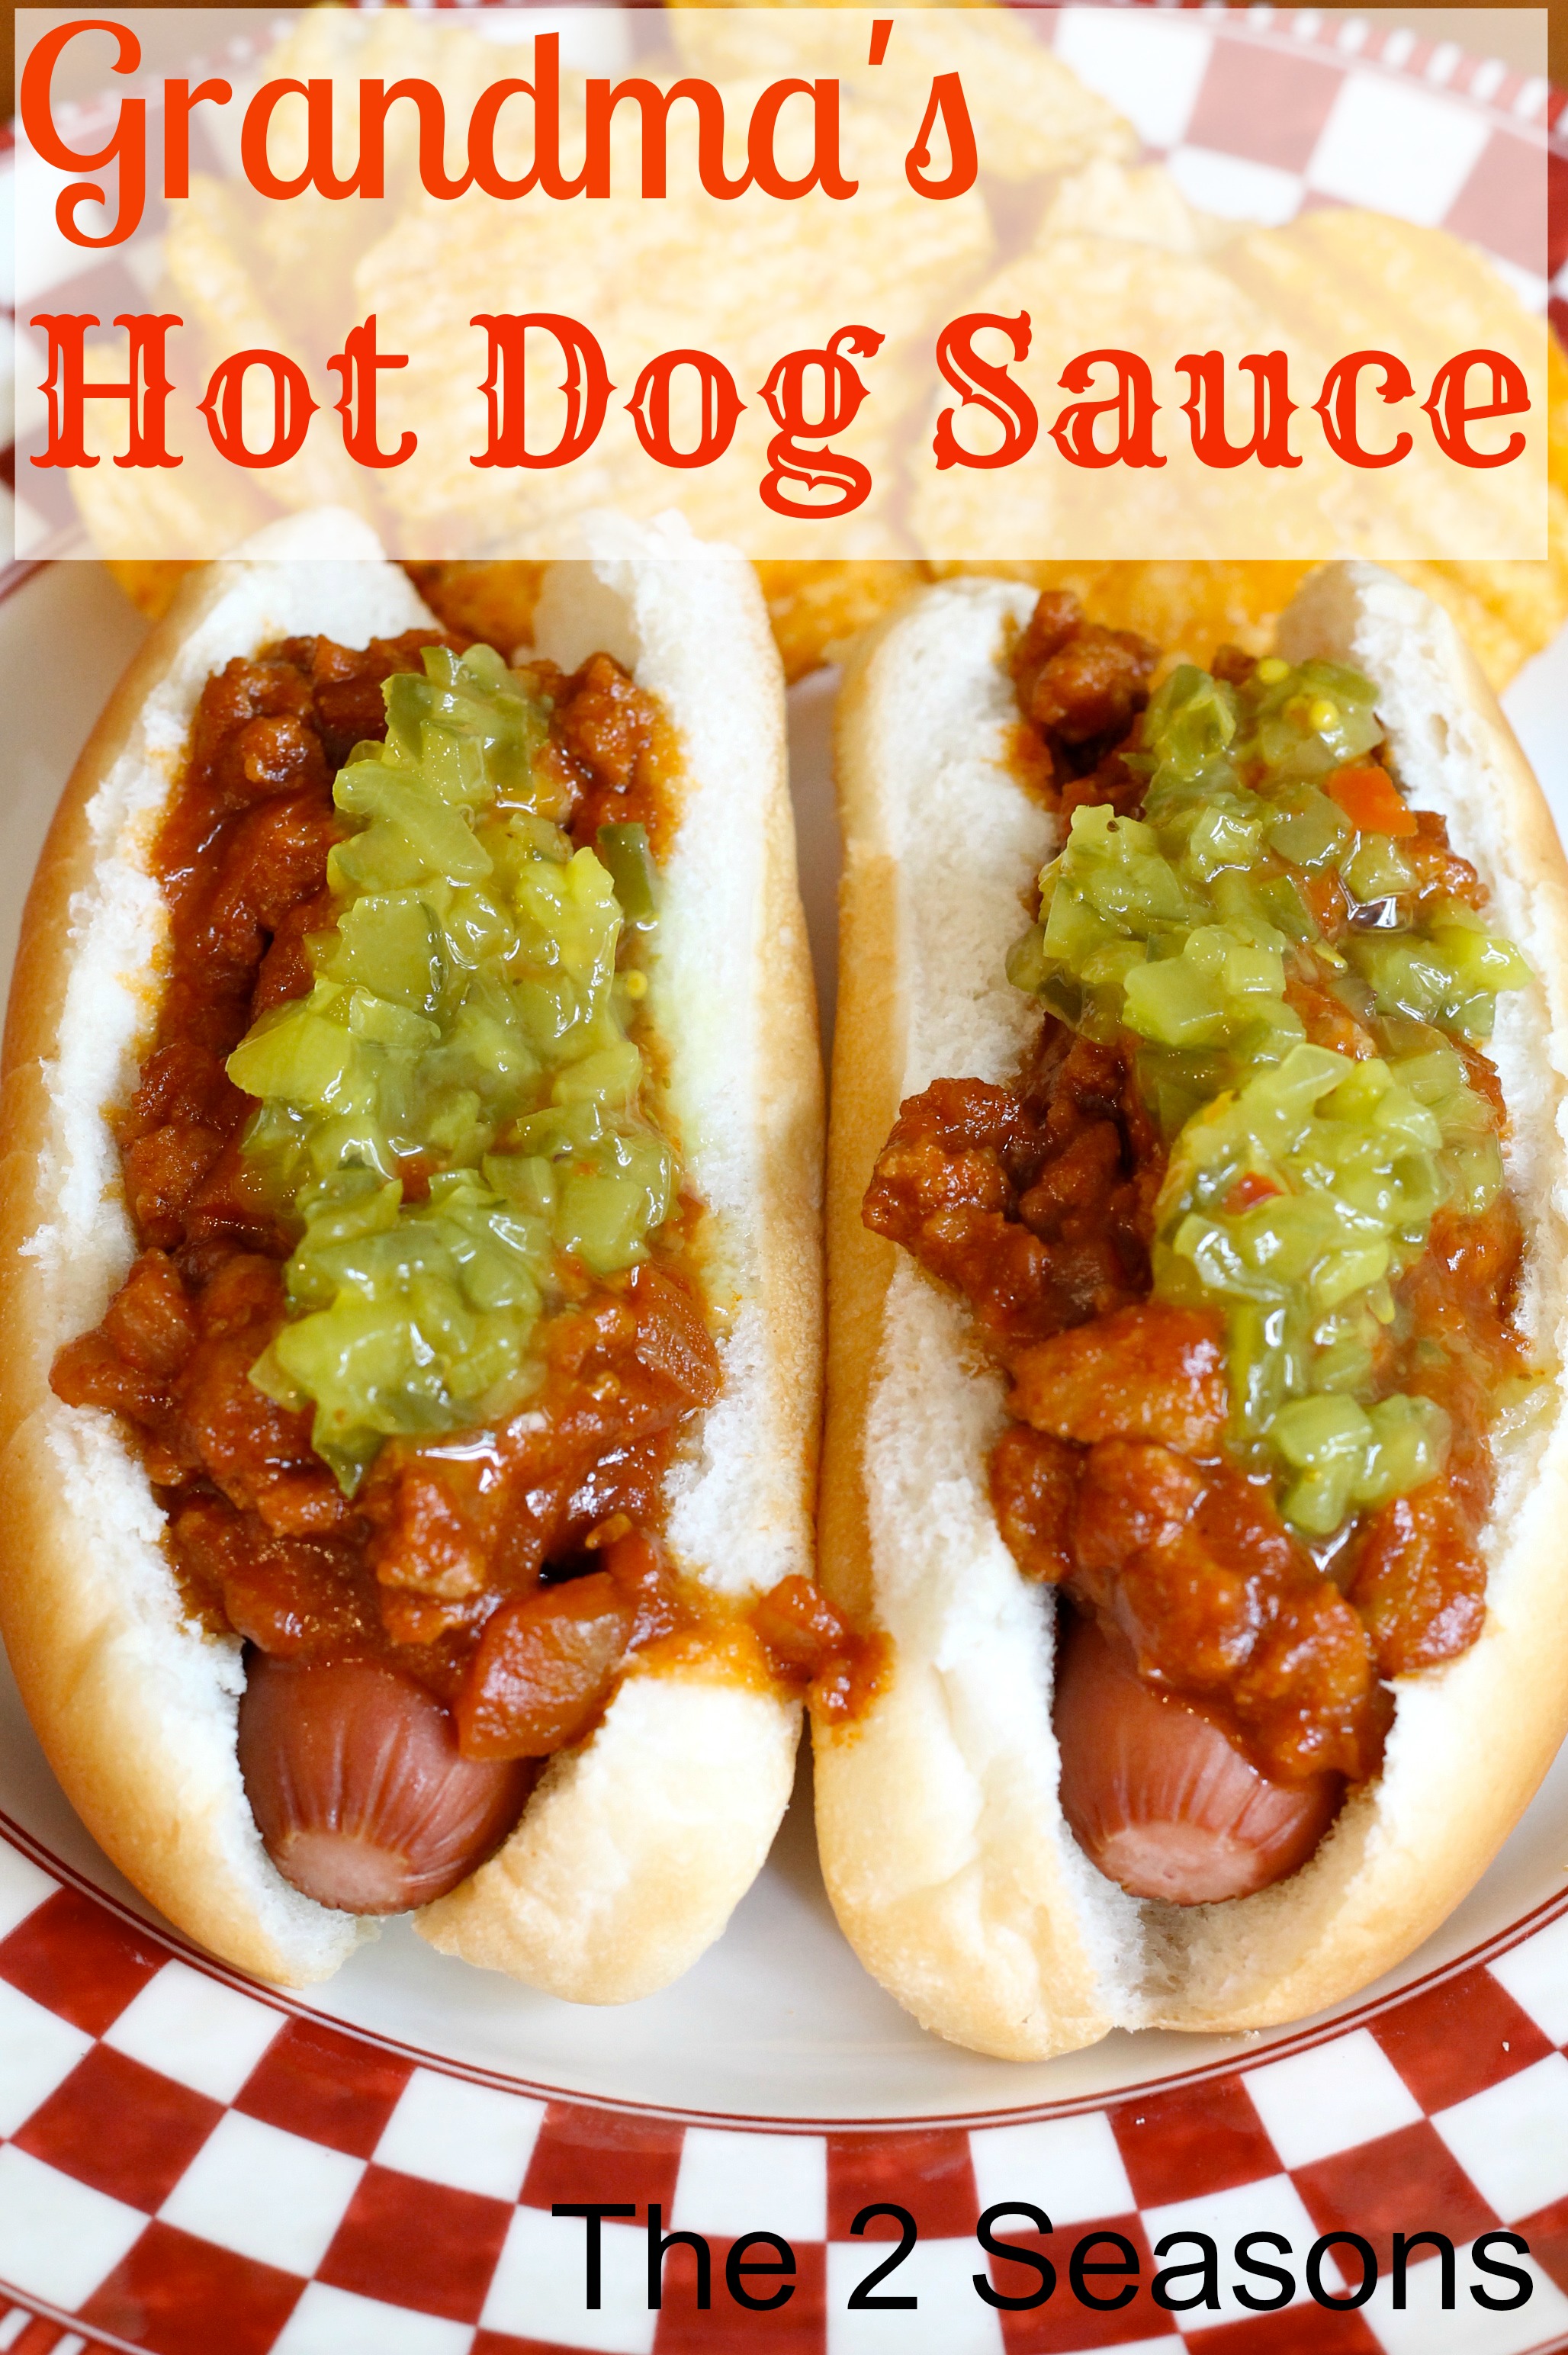 Hot Dog Sauce - Super Bowl Foods